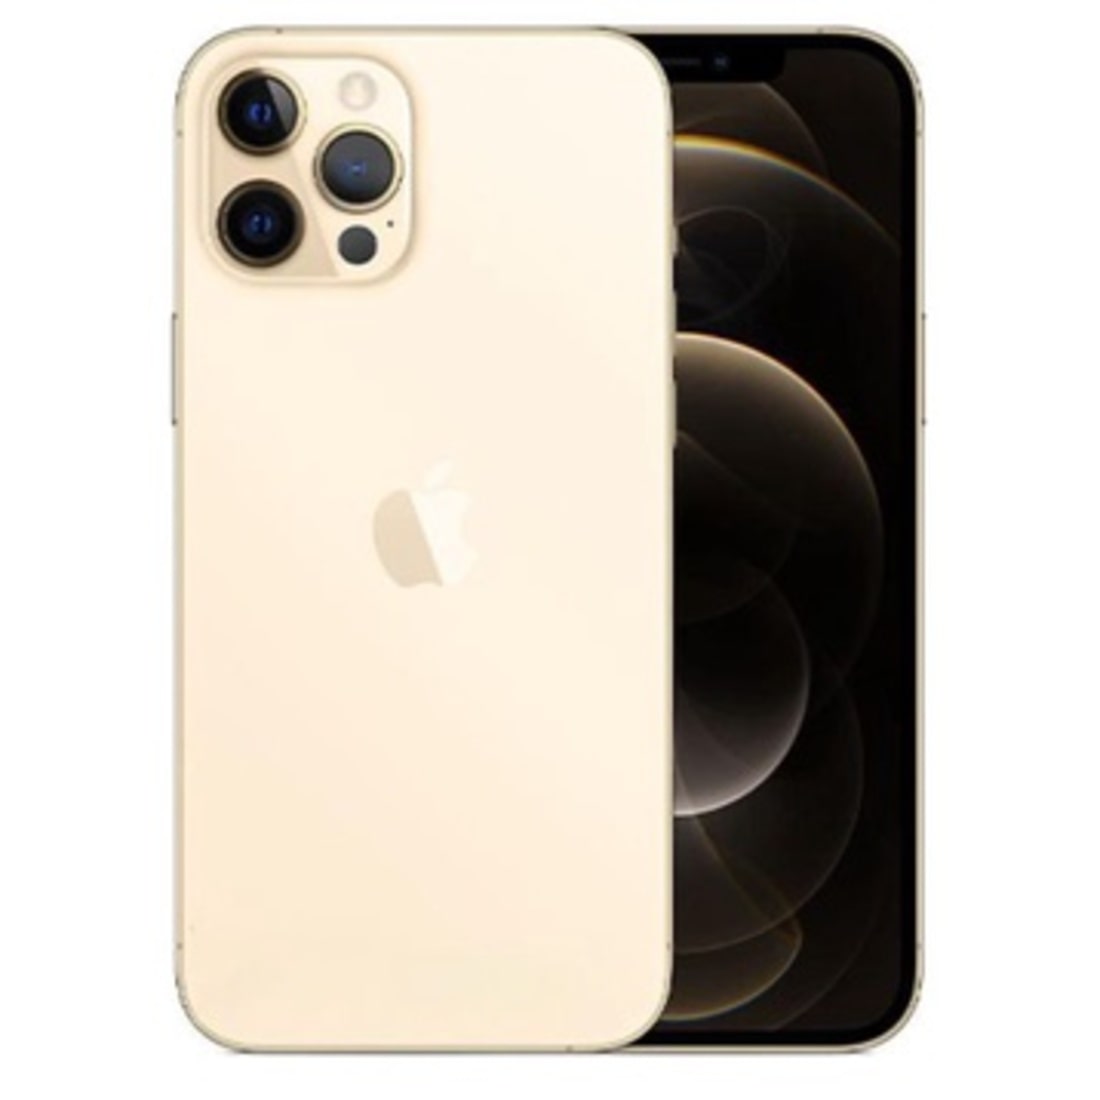 iPhone 12 Pro Max màu Gold – Màu vàng sang chảnh, đẳng cấp